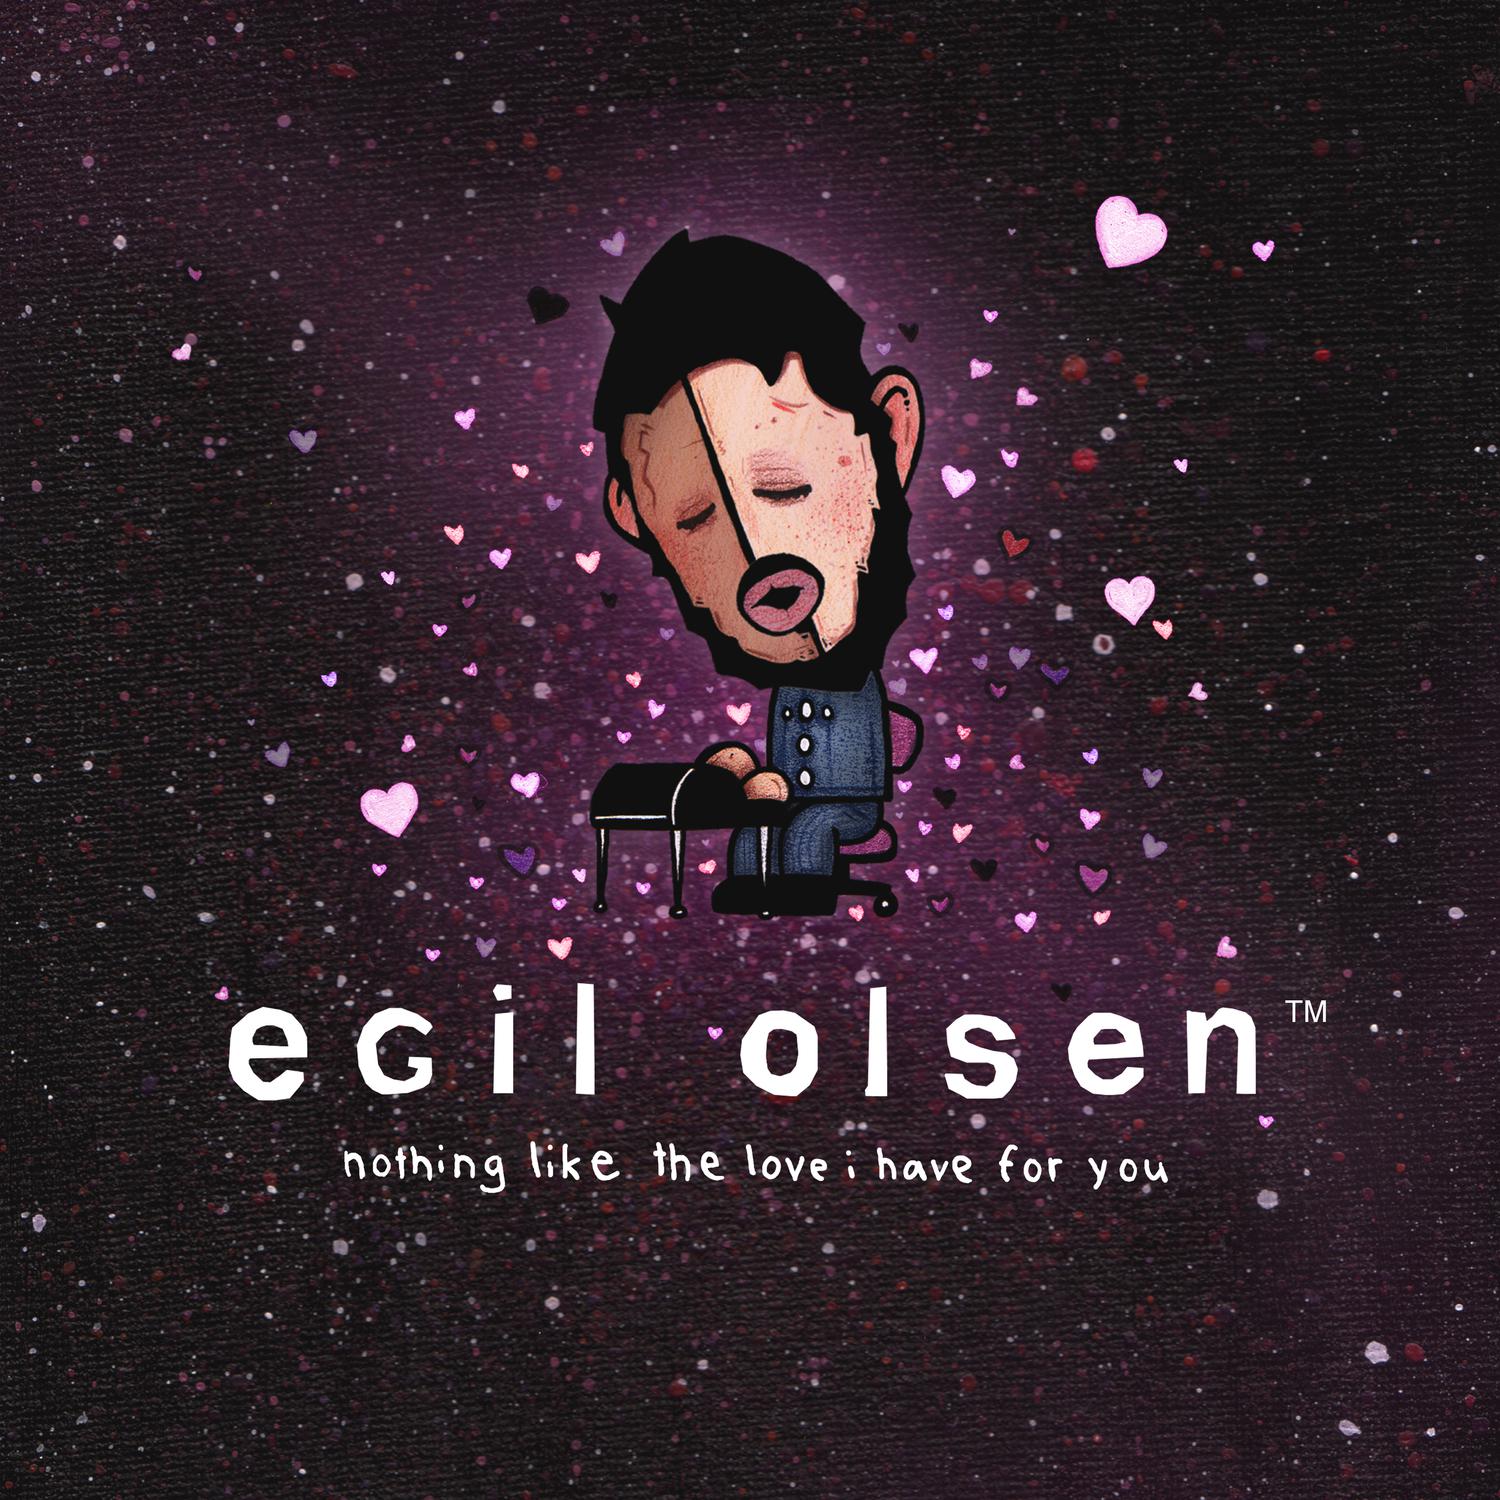 Egil Olsen - home alone